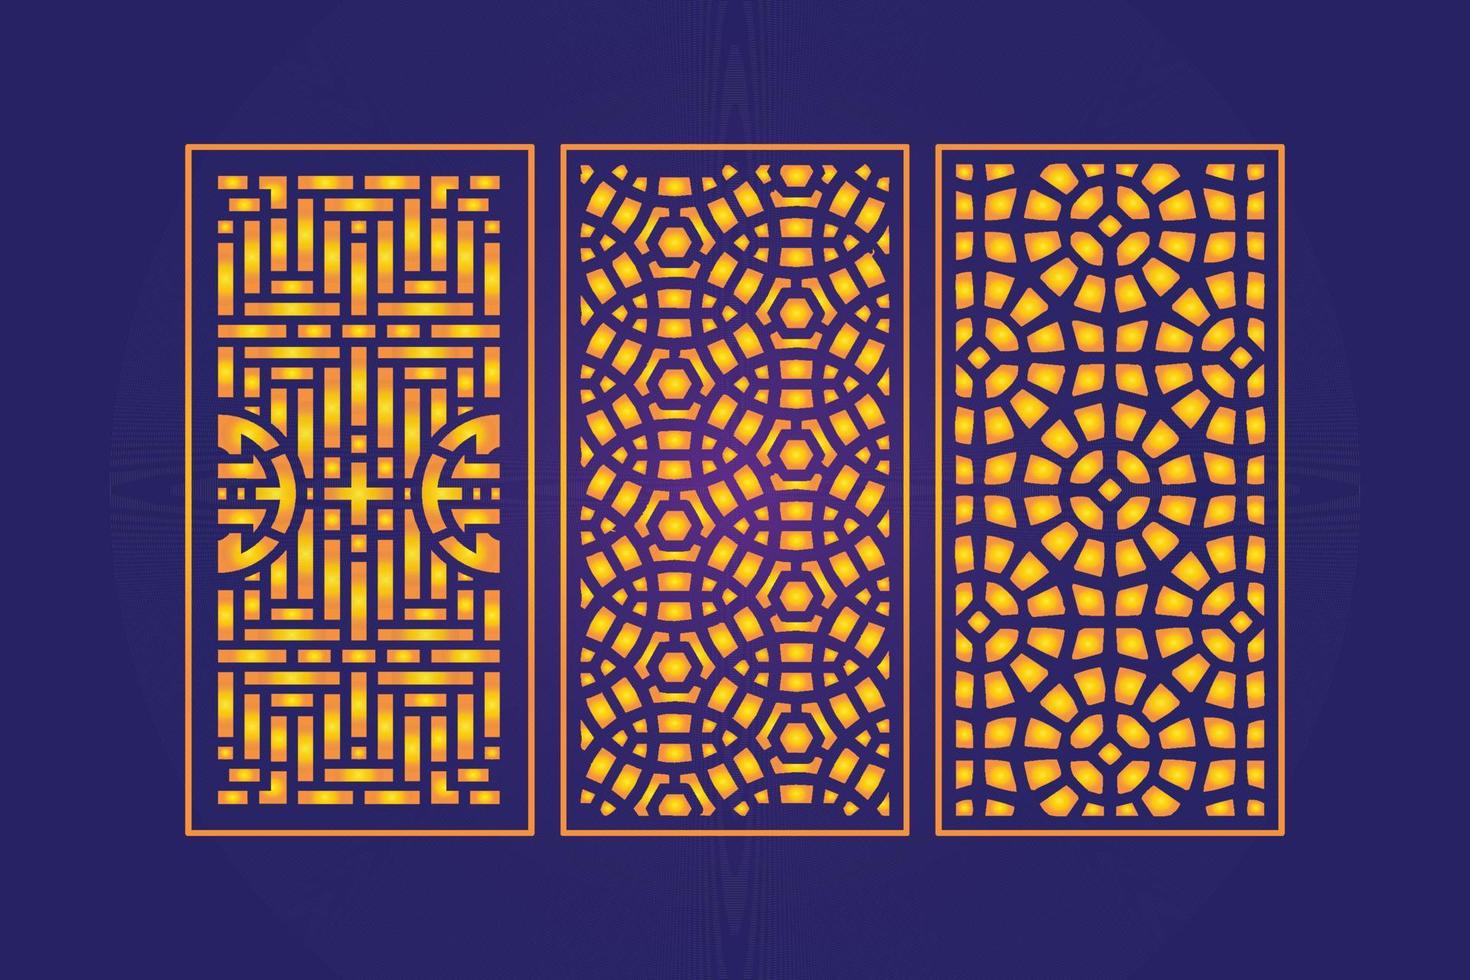 dekoratives gestanztes florales islamisches abstraktes muster lasergeschnittene plattenschablone gold vektor